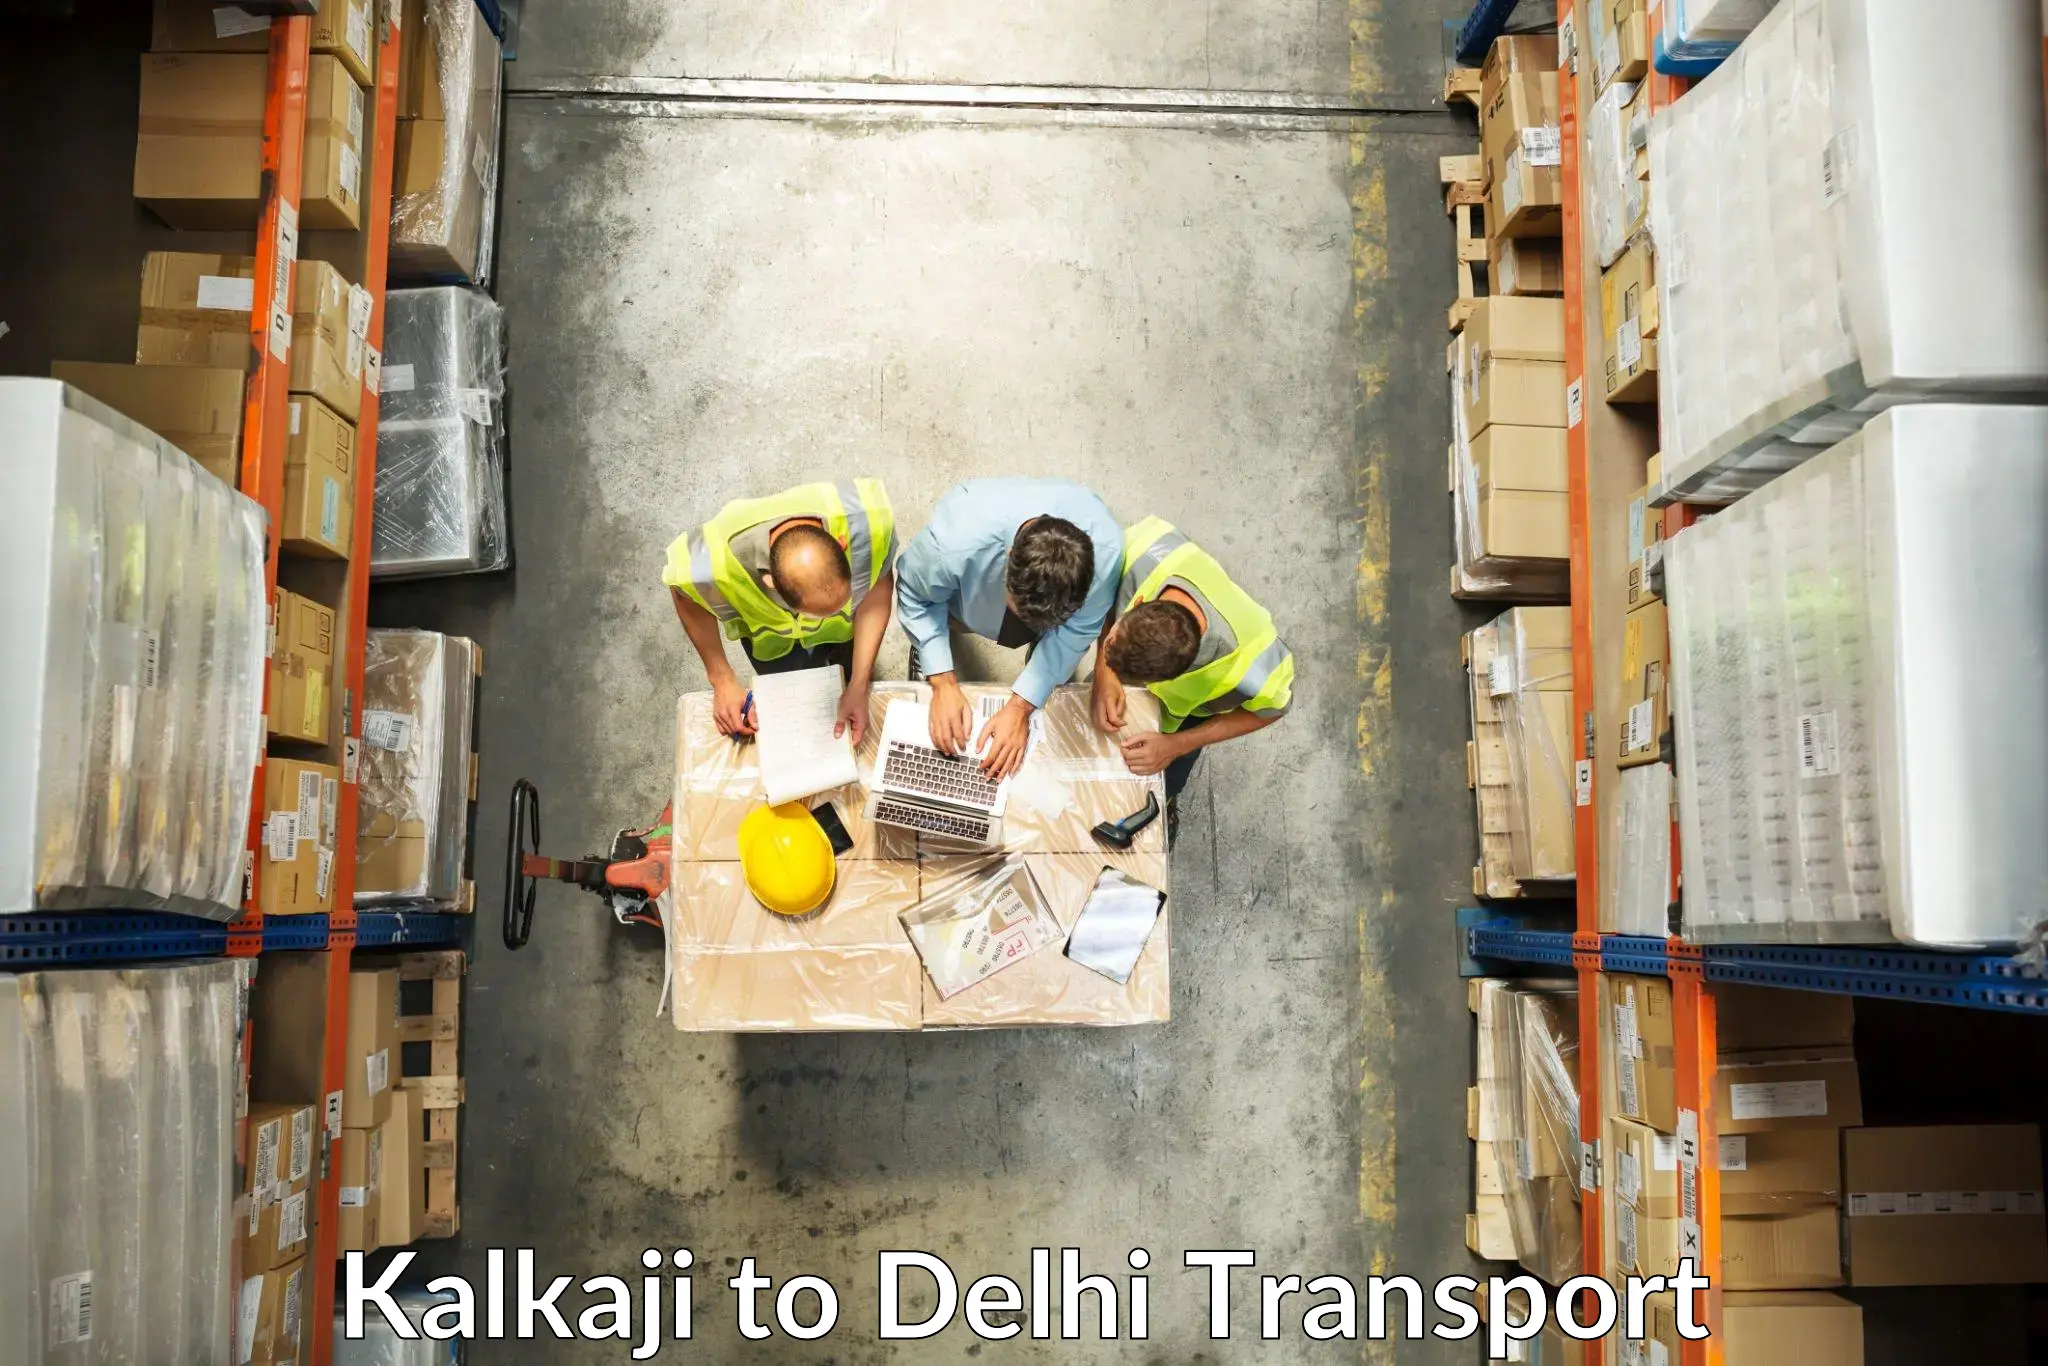 Delivery service Kalkaji to Delhi